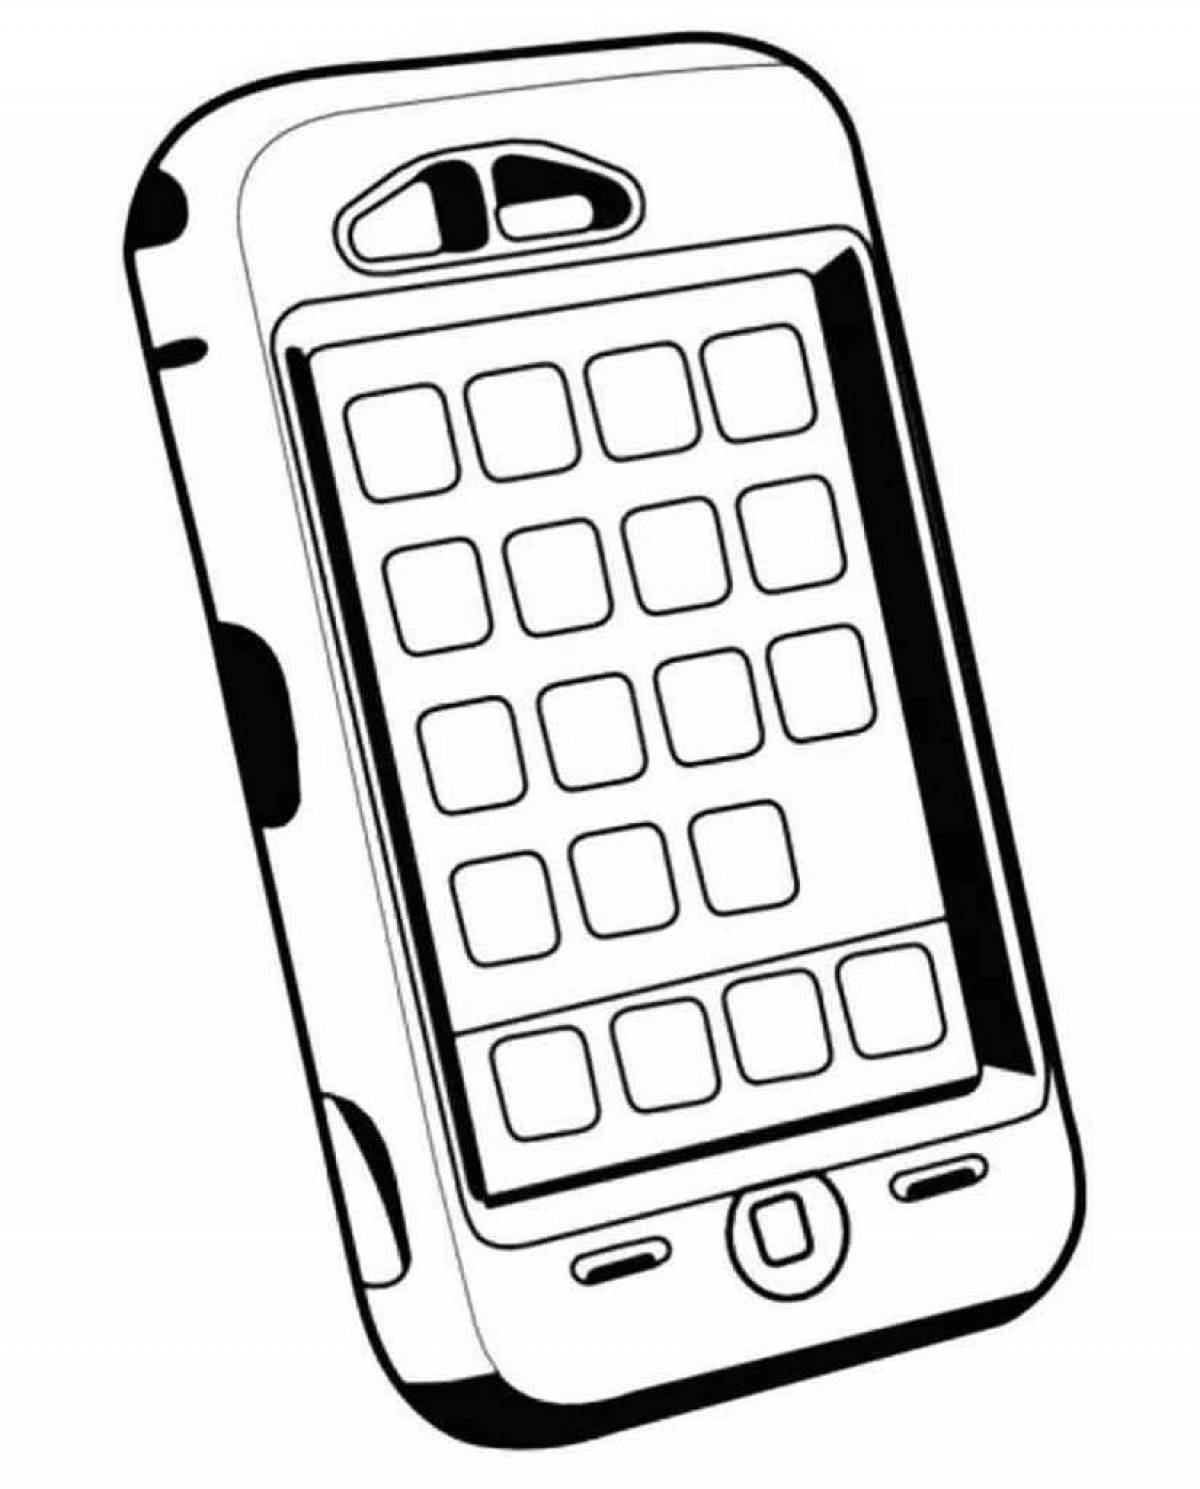 Юмористическая раскраска iphone 12